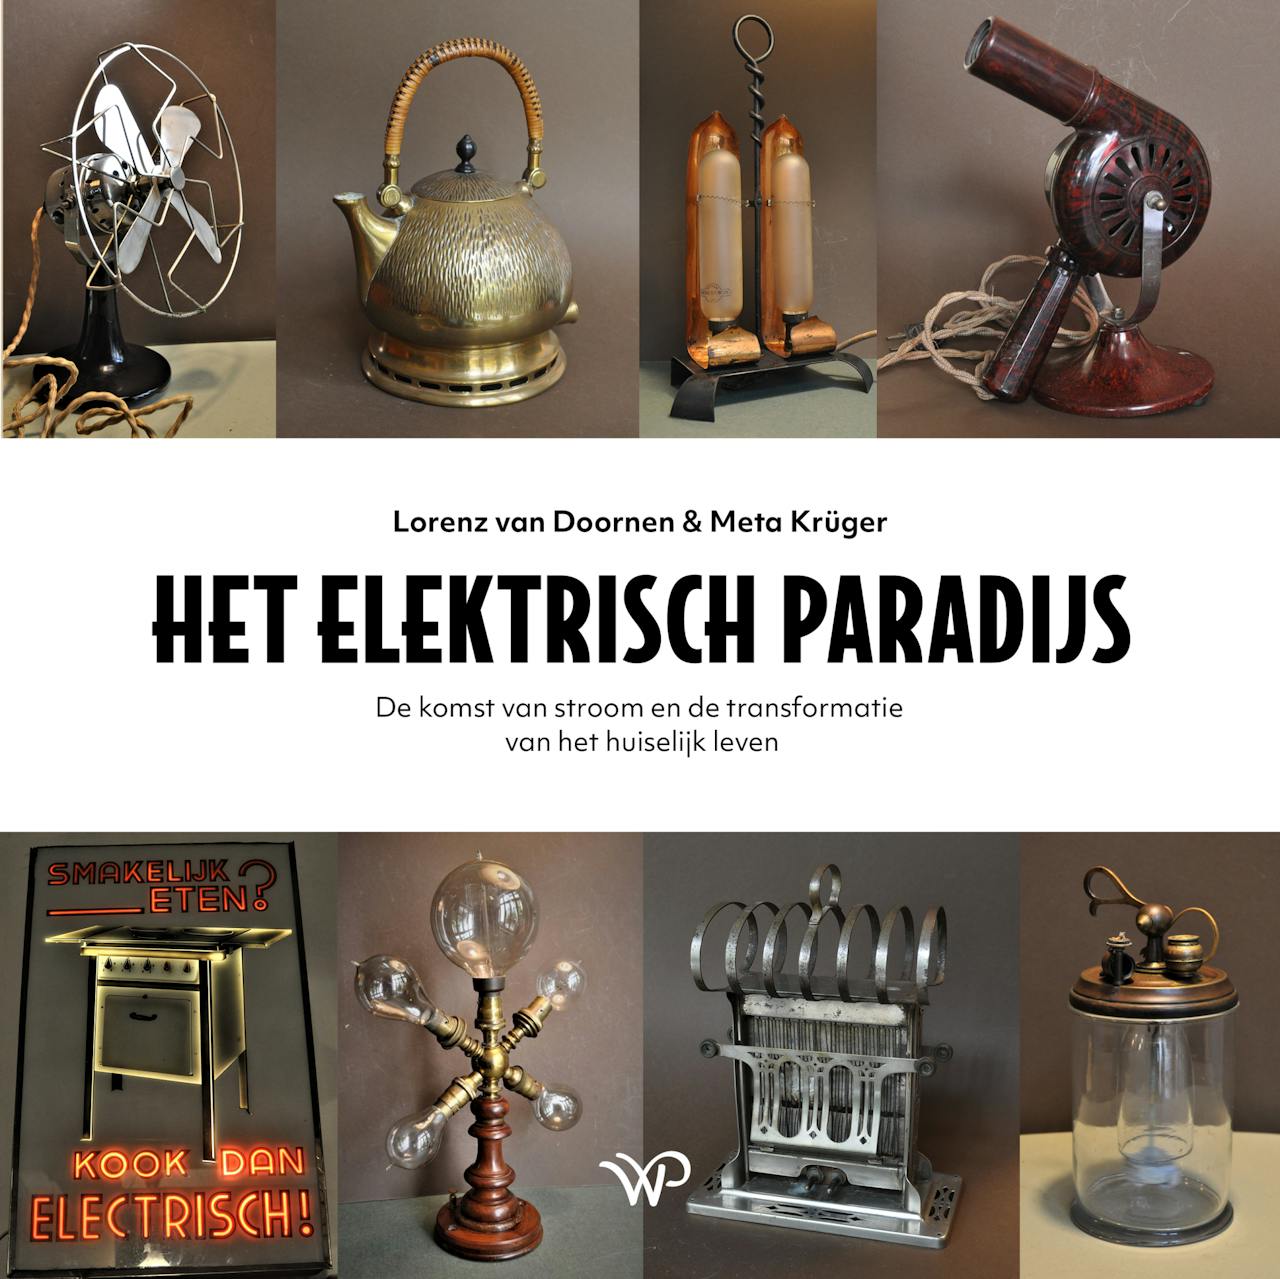 De cover van het boek 'Het elektrisch paradijs' van Lorenz van Doornen en Meta Krüger. Onder te titel staat de tekst 'De komst van stroom en de transformatie van het huiselijk leven'.